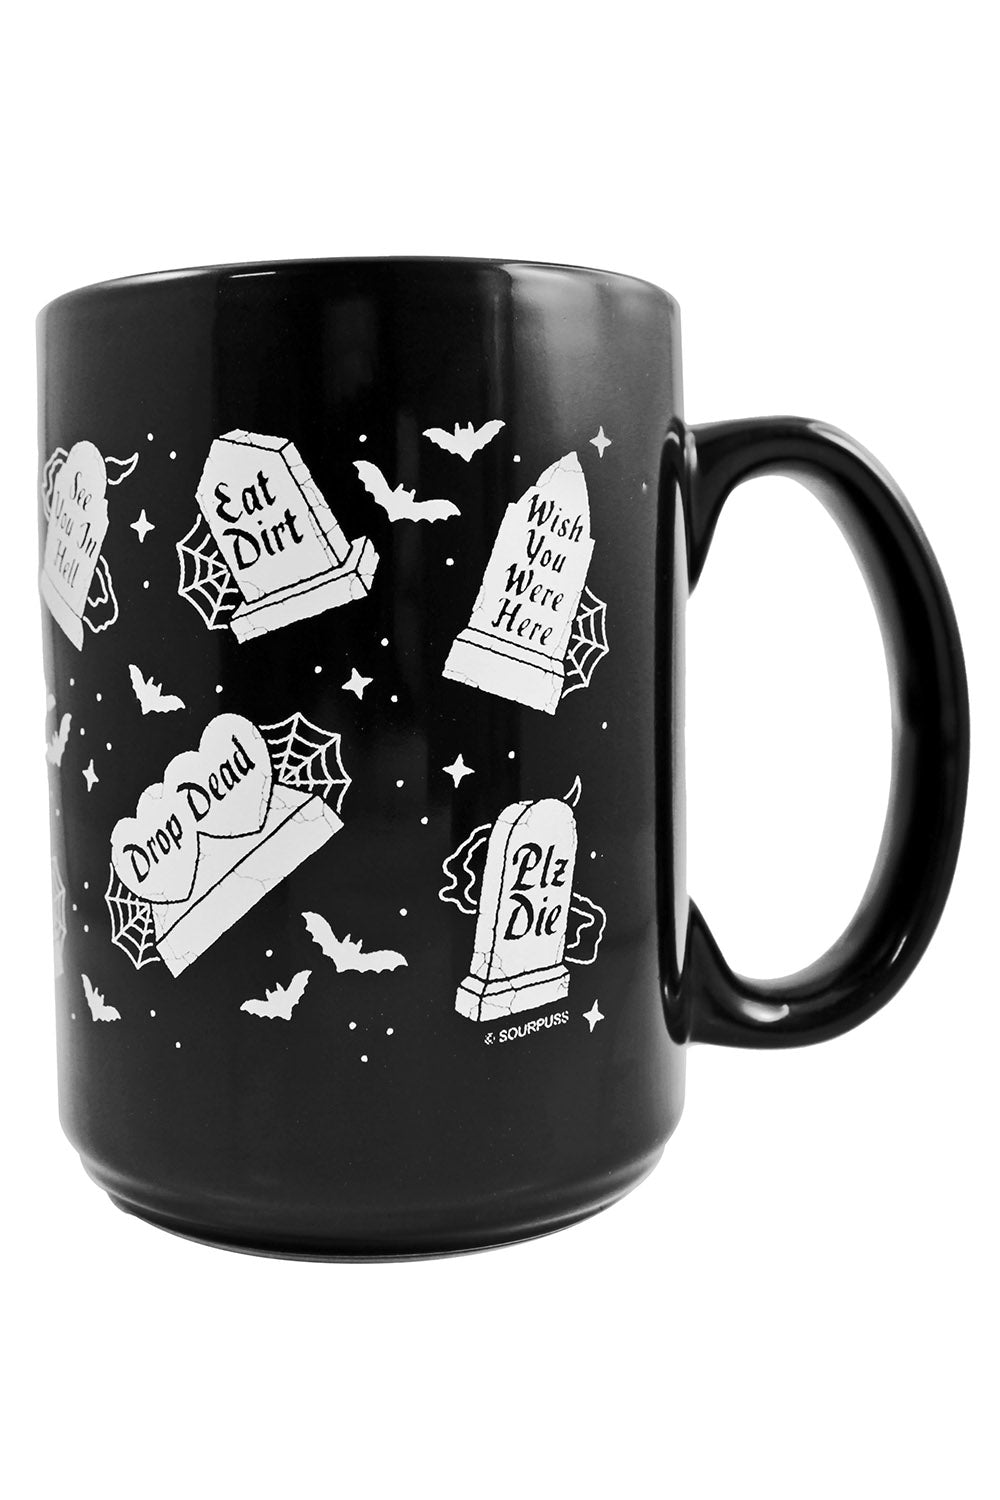 Rude Tombs Big Coffee Mug